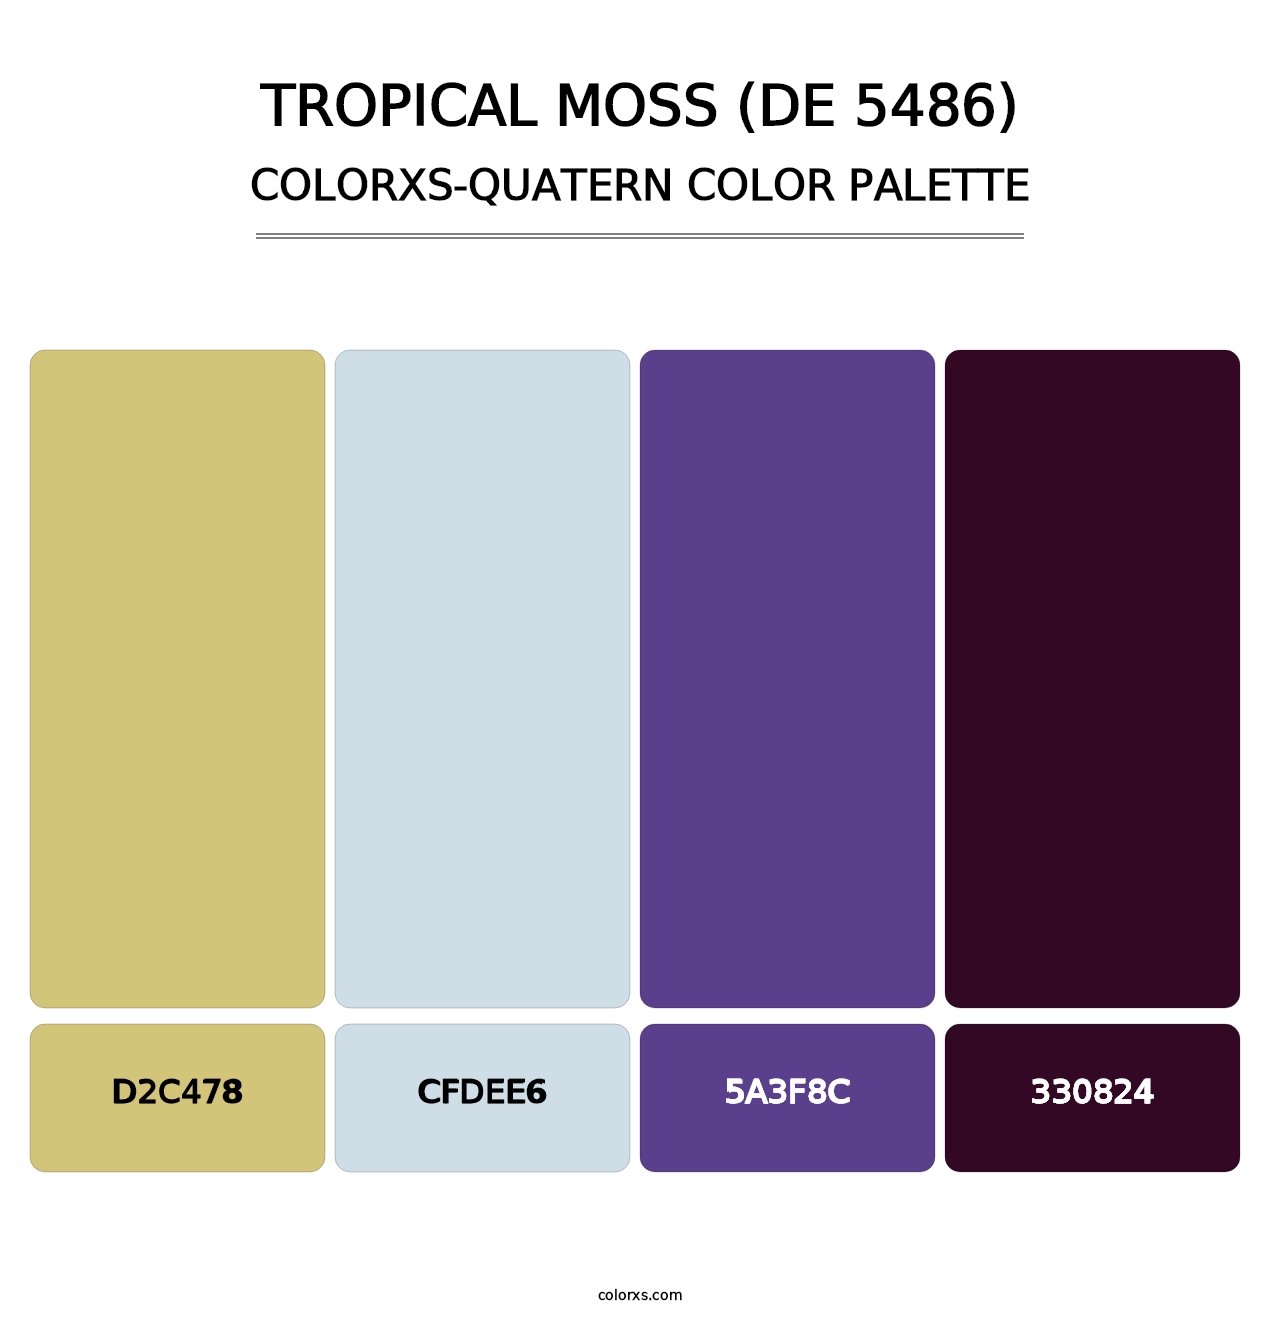 Tropical Moss (DE 5486) - Colorxs Quatern Palette